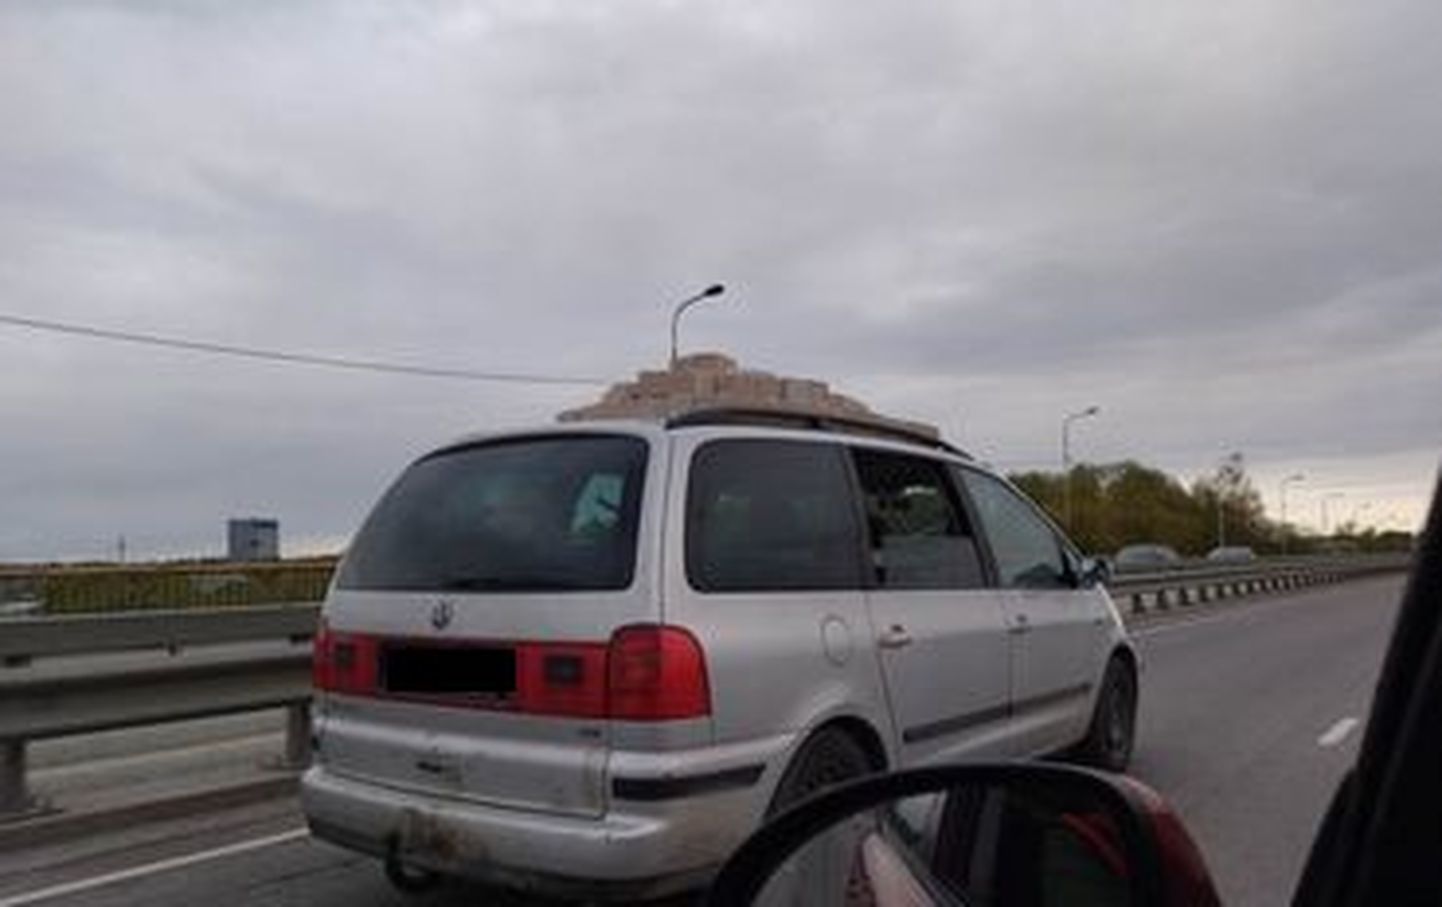 Автомобиль с кирпичами на крыше.